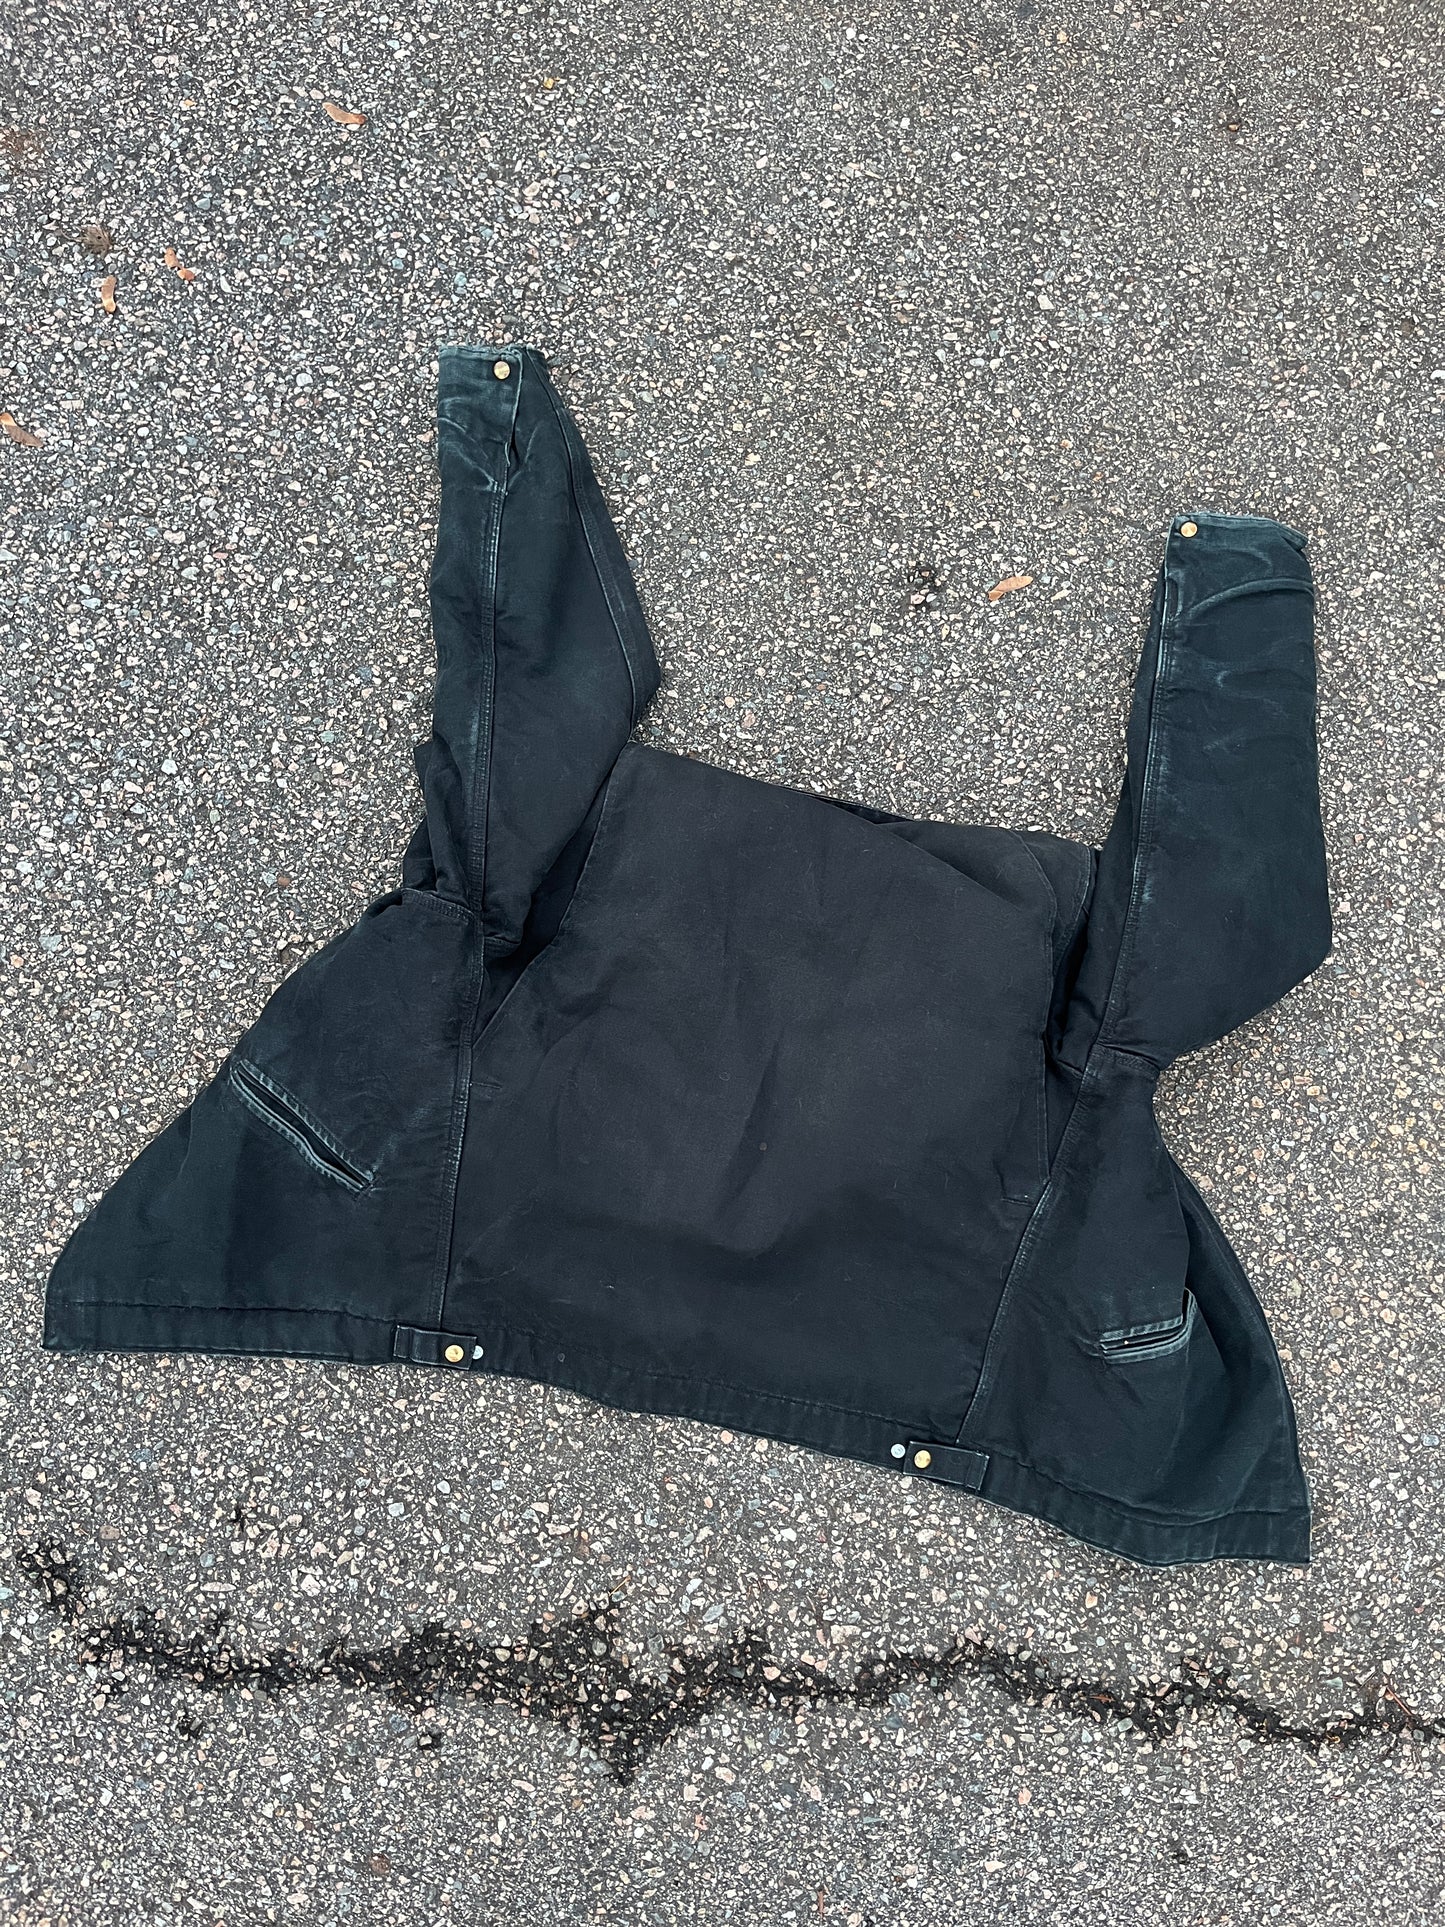 Faded Black Carhartt Detroit Jacket - Medium Tall